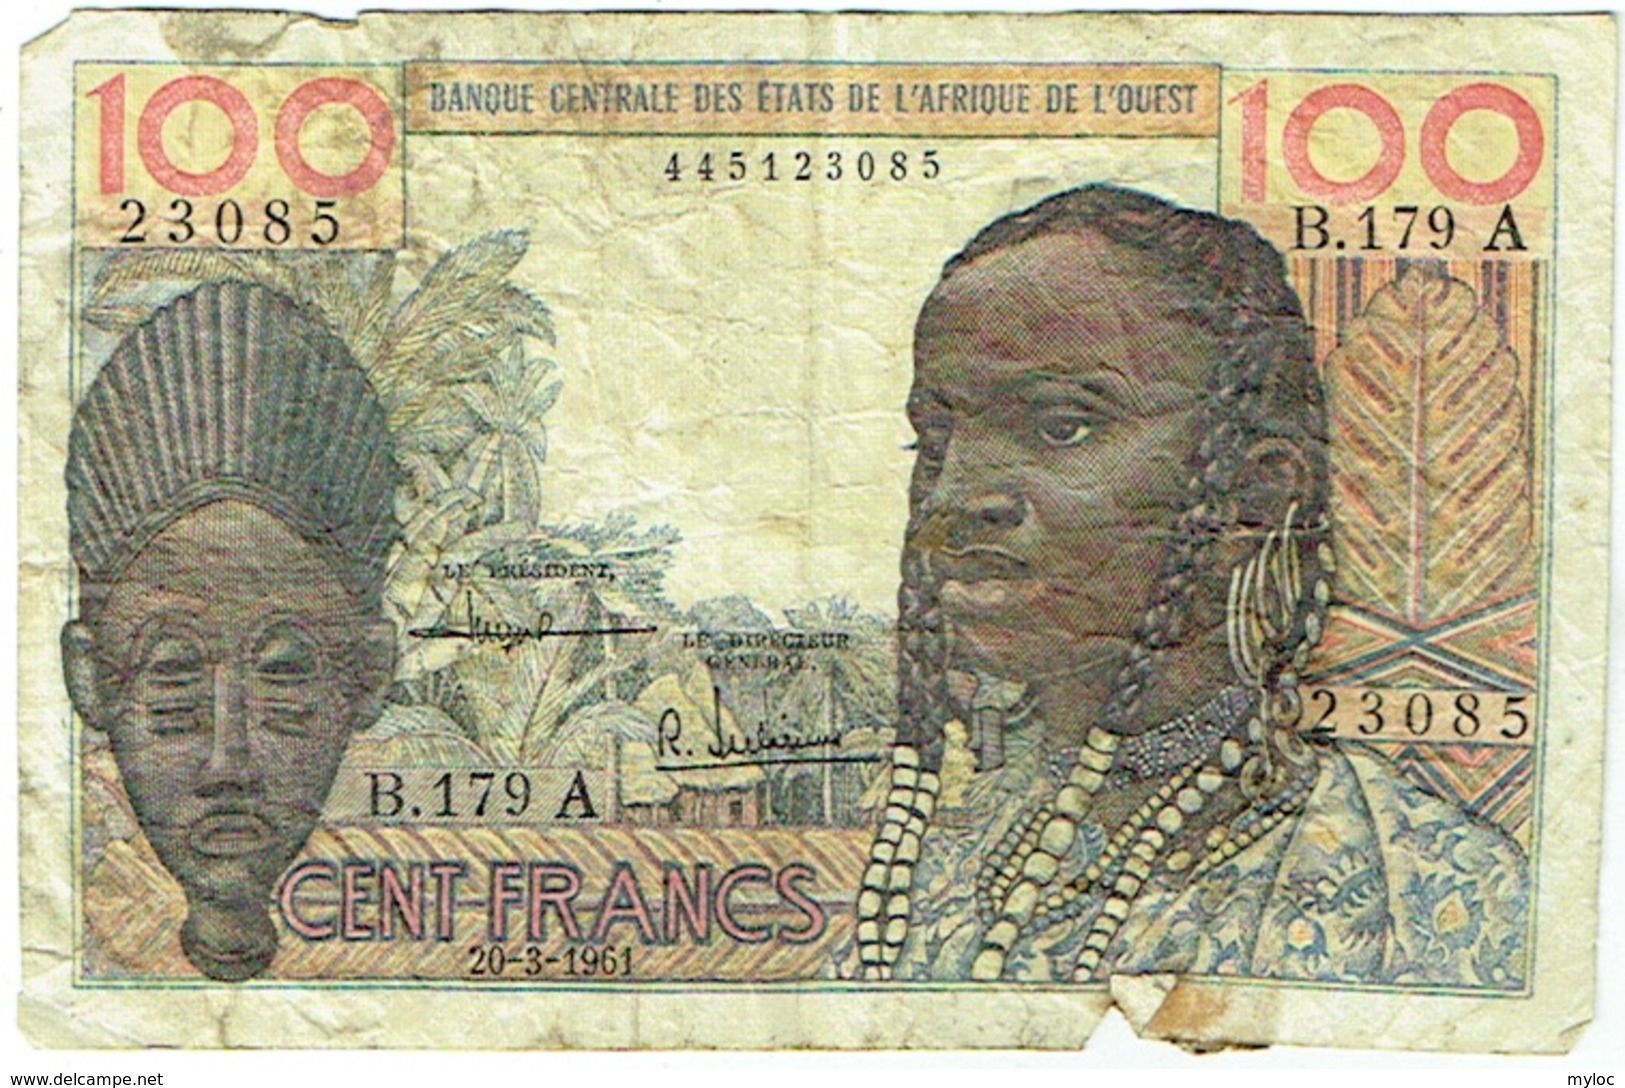 Banque Centrale Etats Afrique De L'Ouest. 100 (Cent) Francs. 20-3-1961 - États D'Afrique De L'Ouest